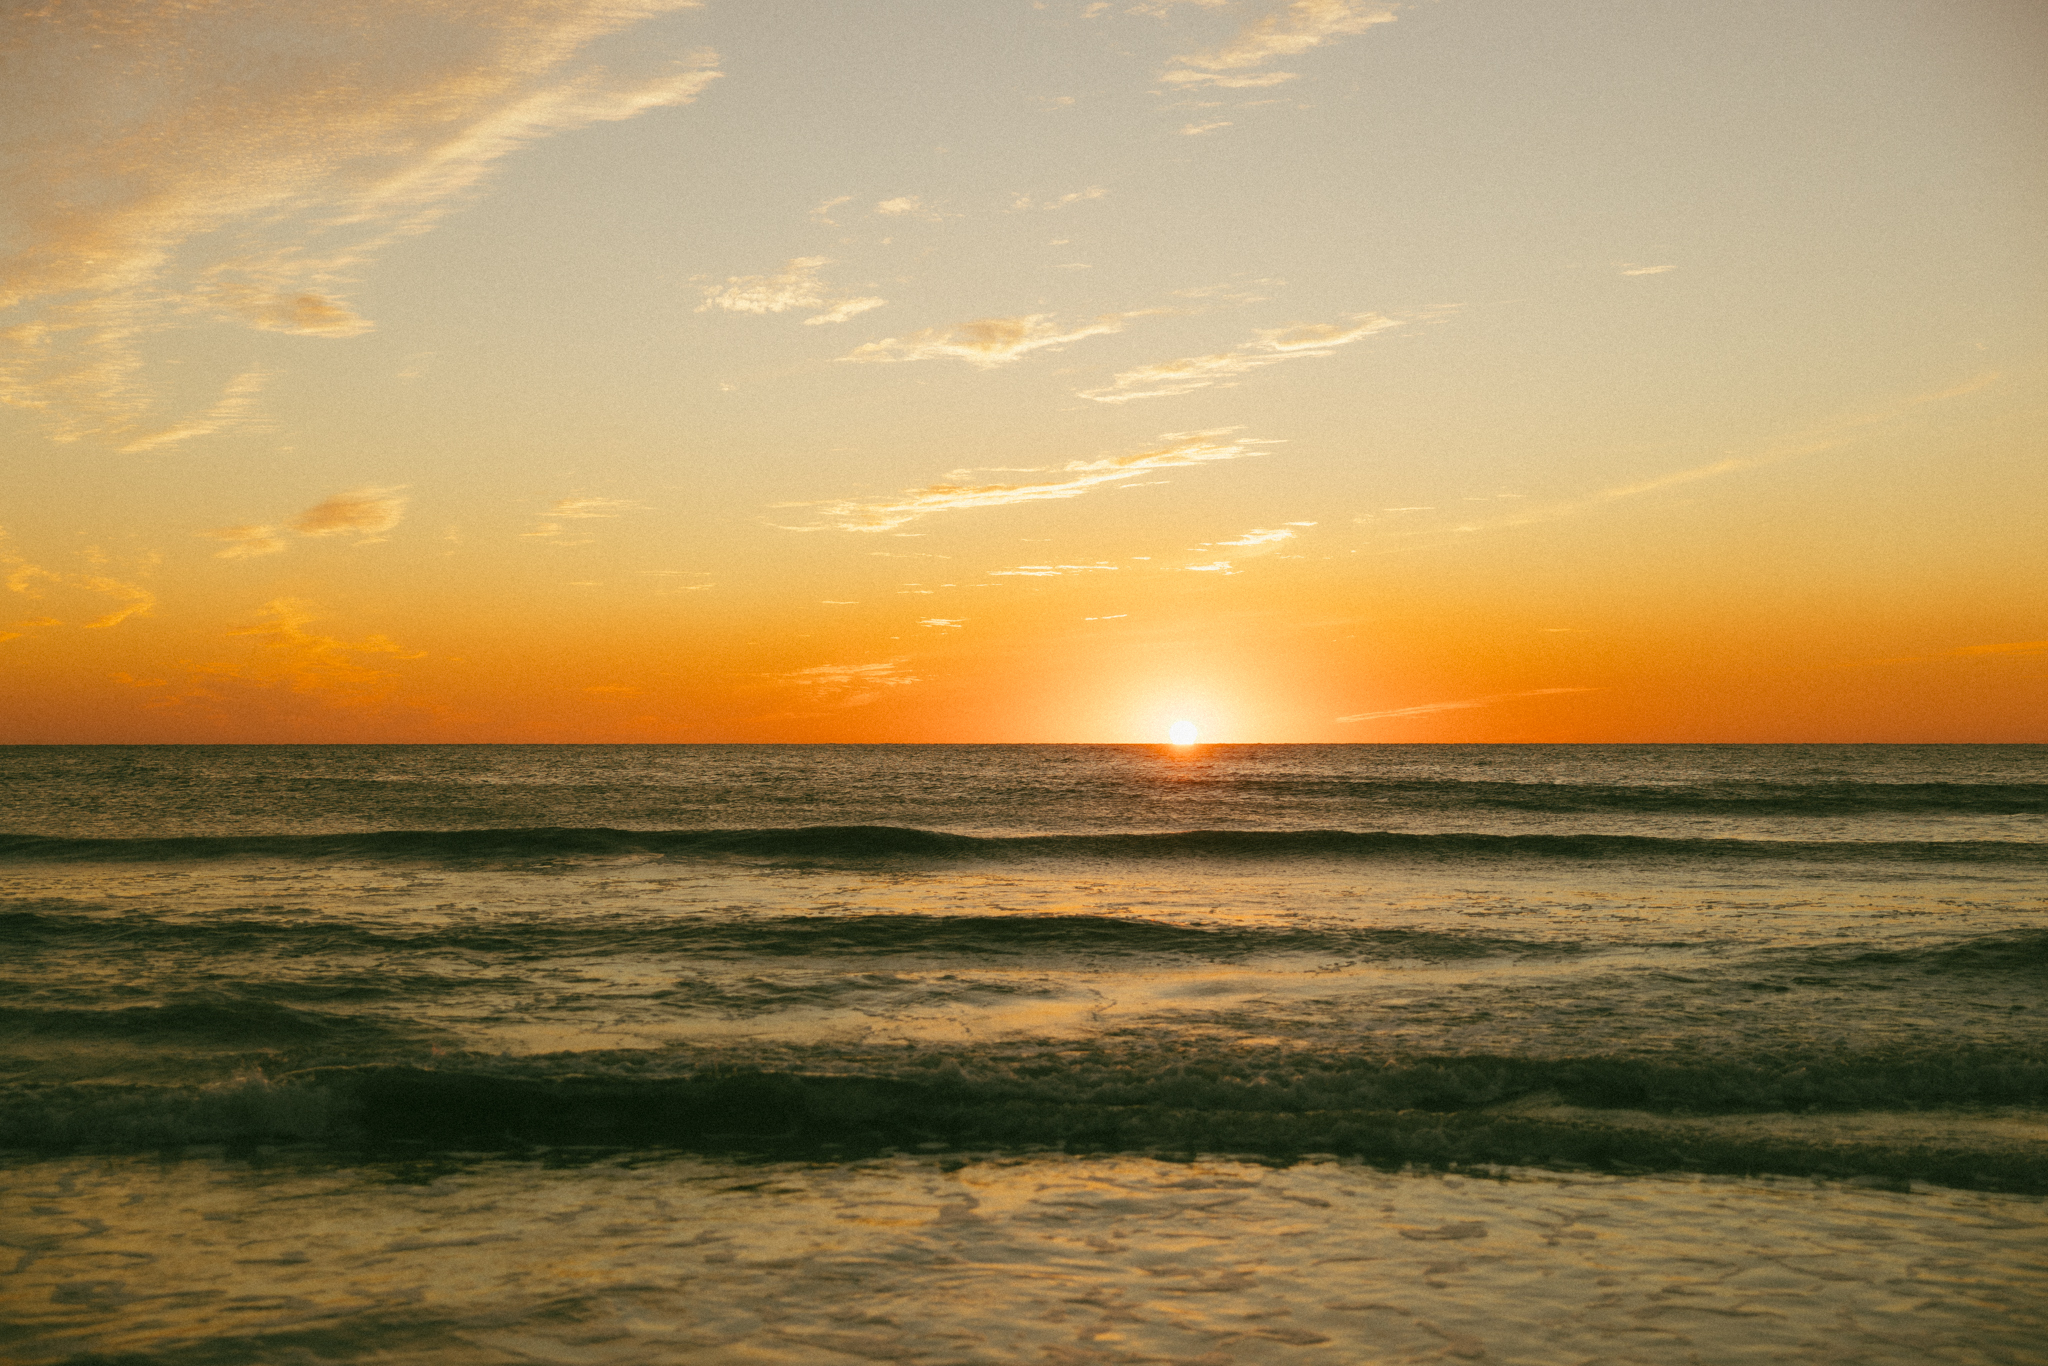 Golden ocean sunset photo on Oasis Beach, Florida